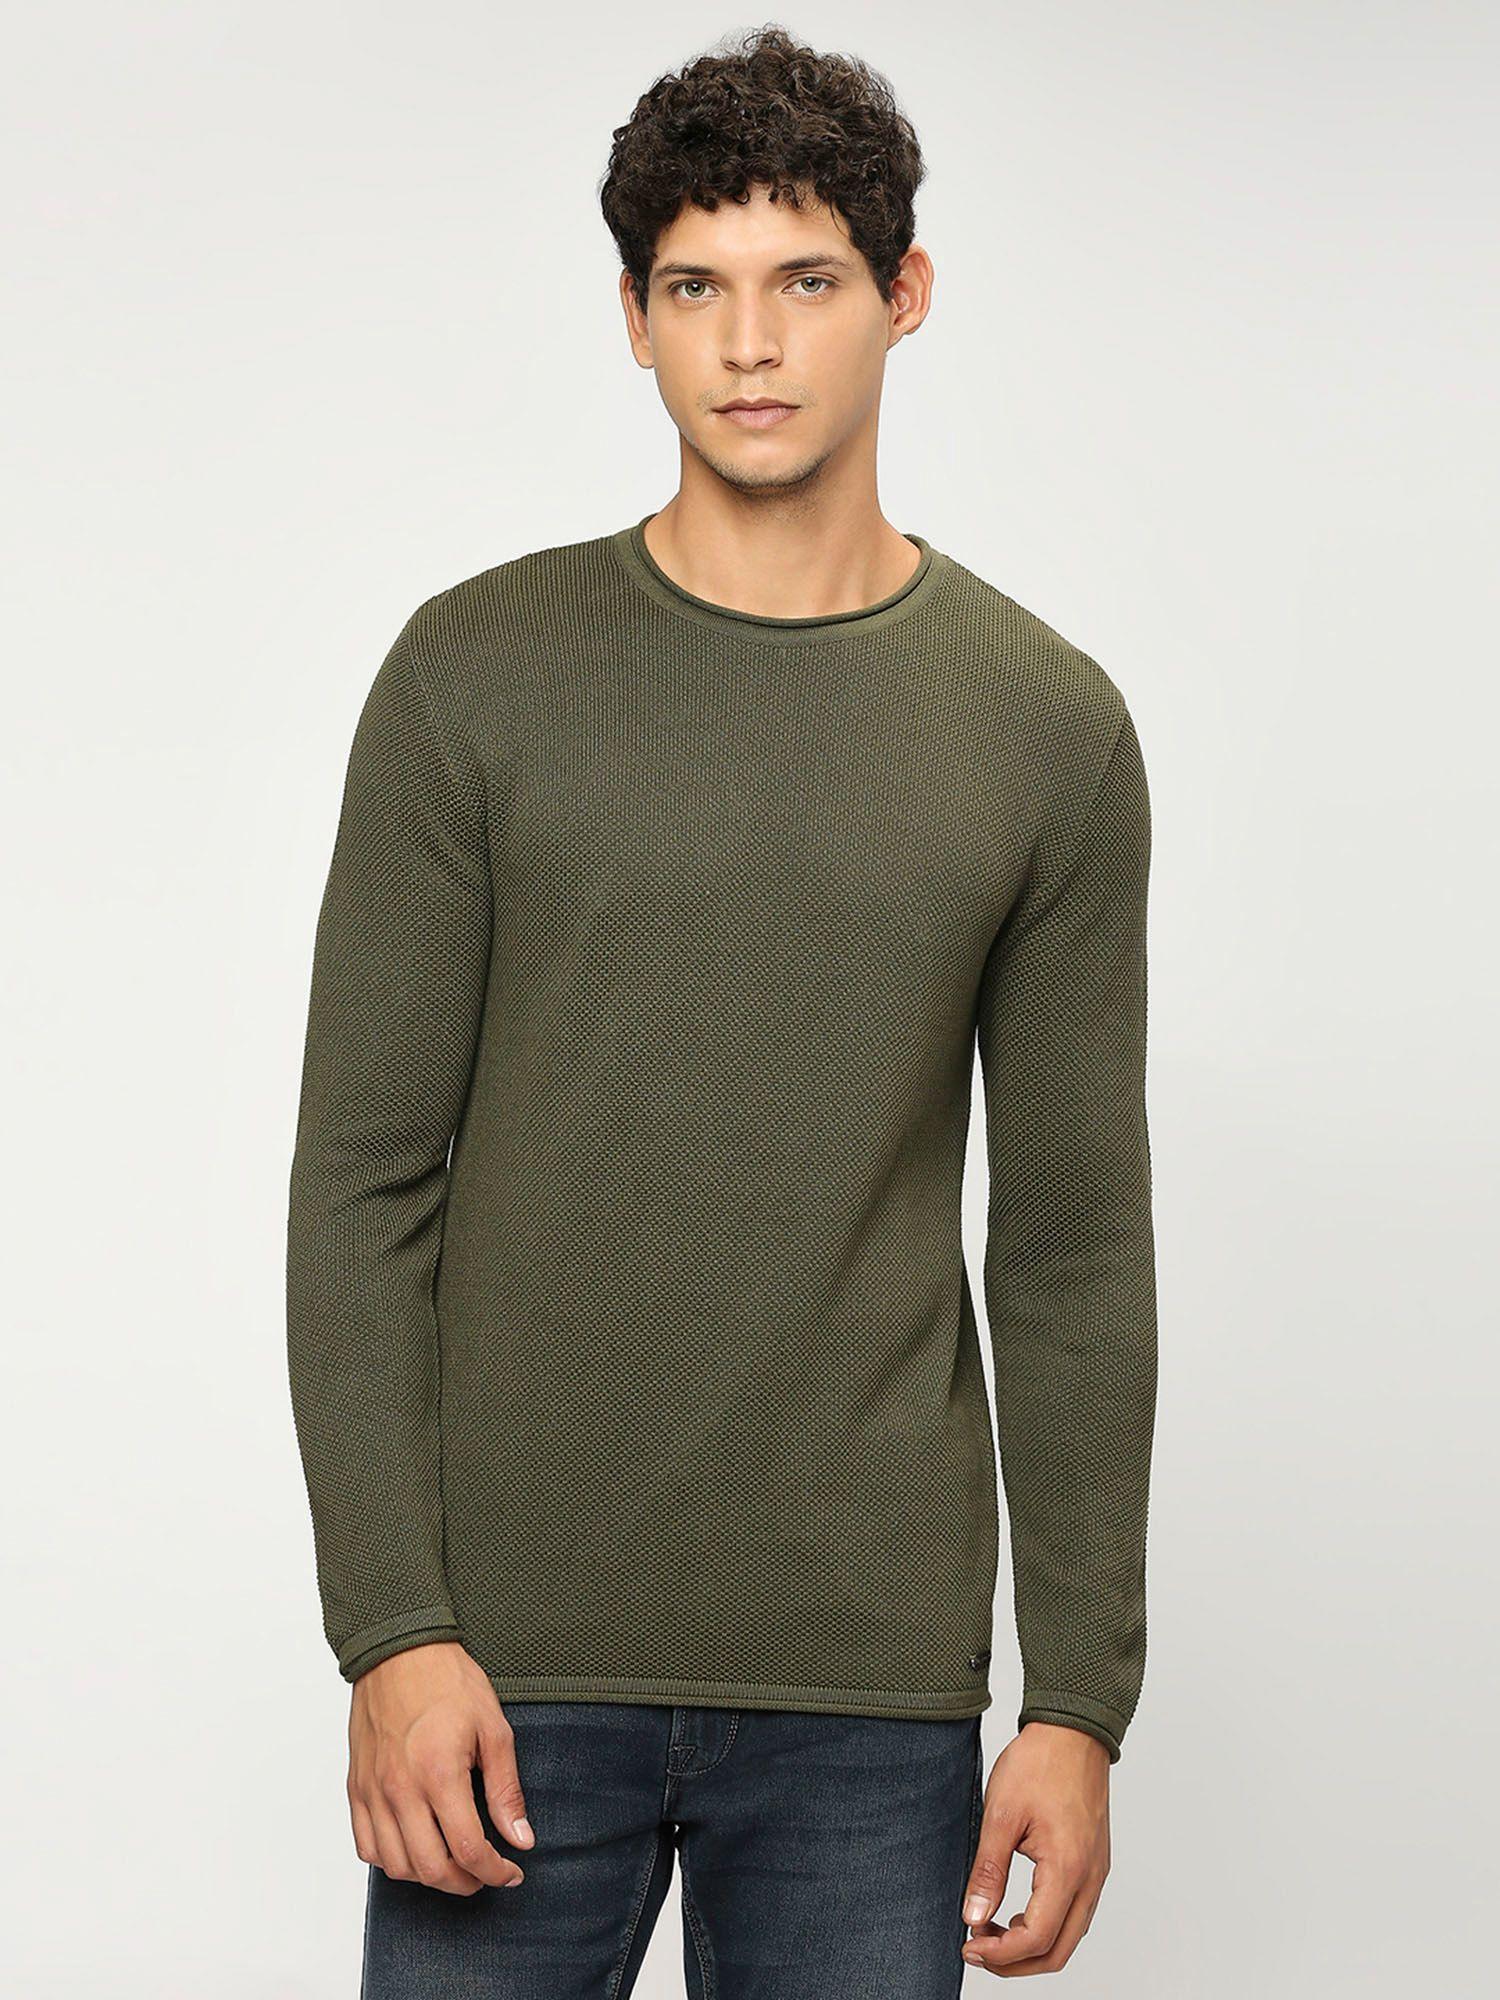 green lightweight long sleeve sweater